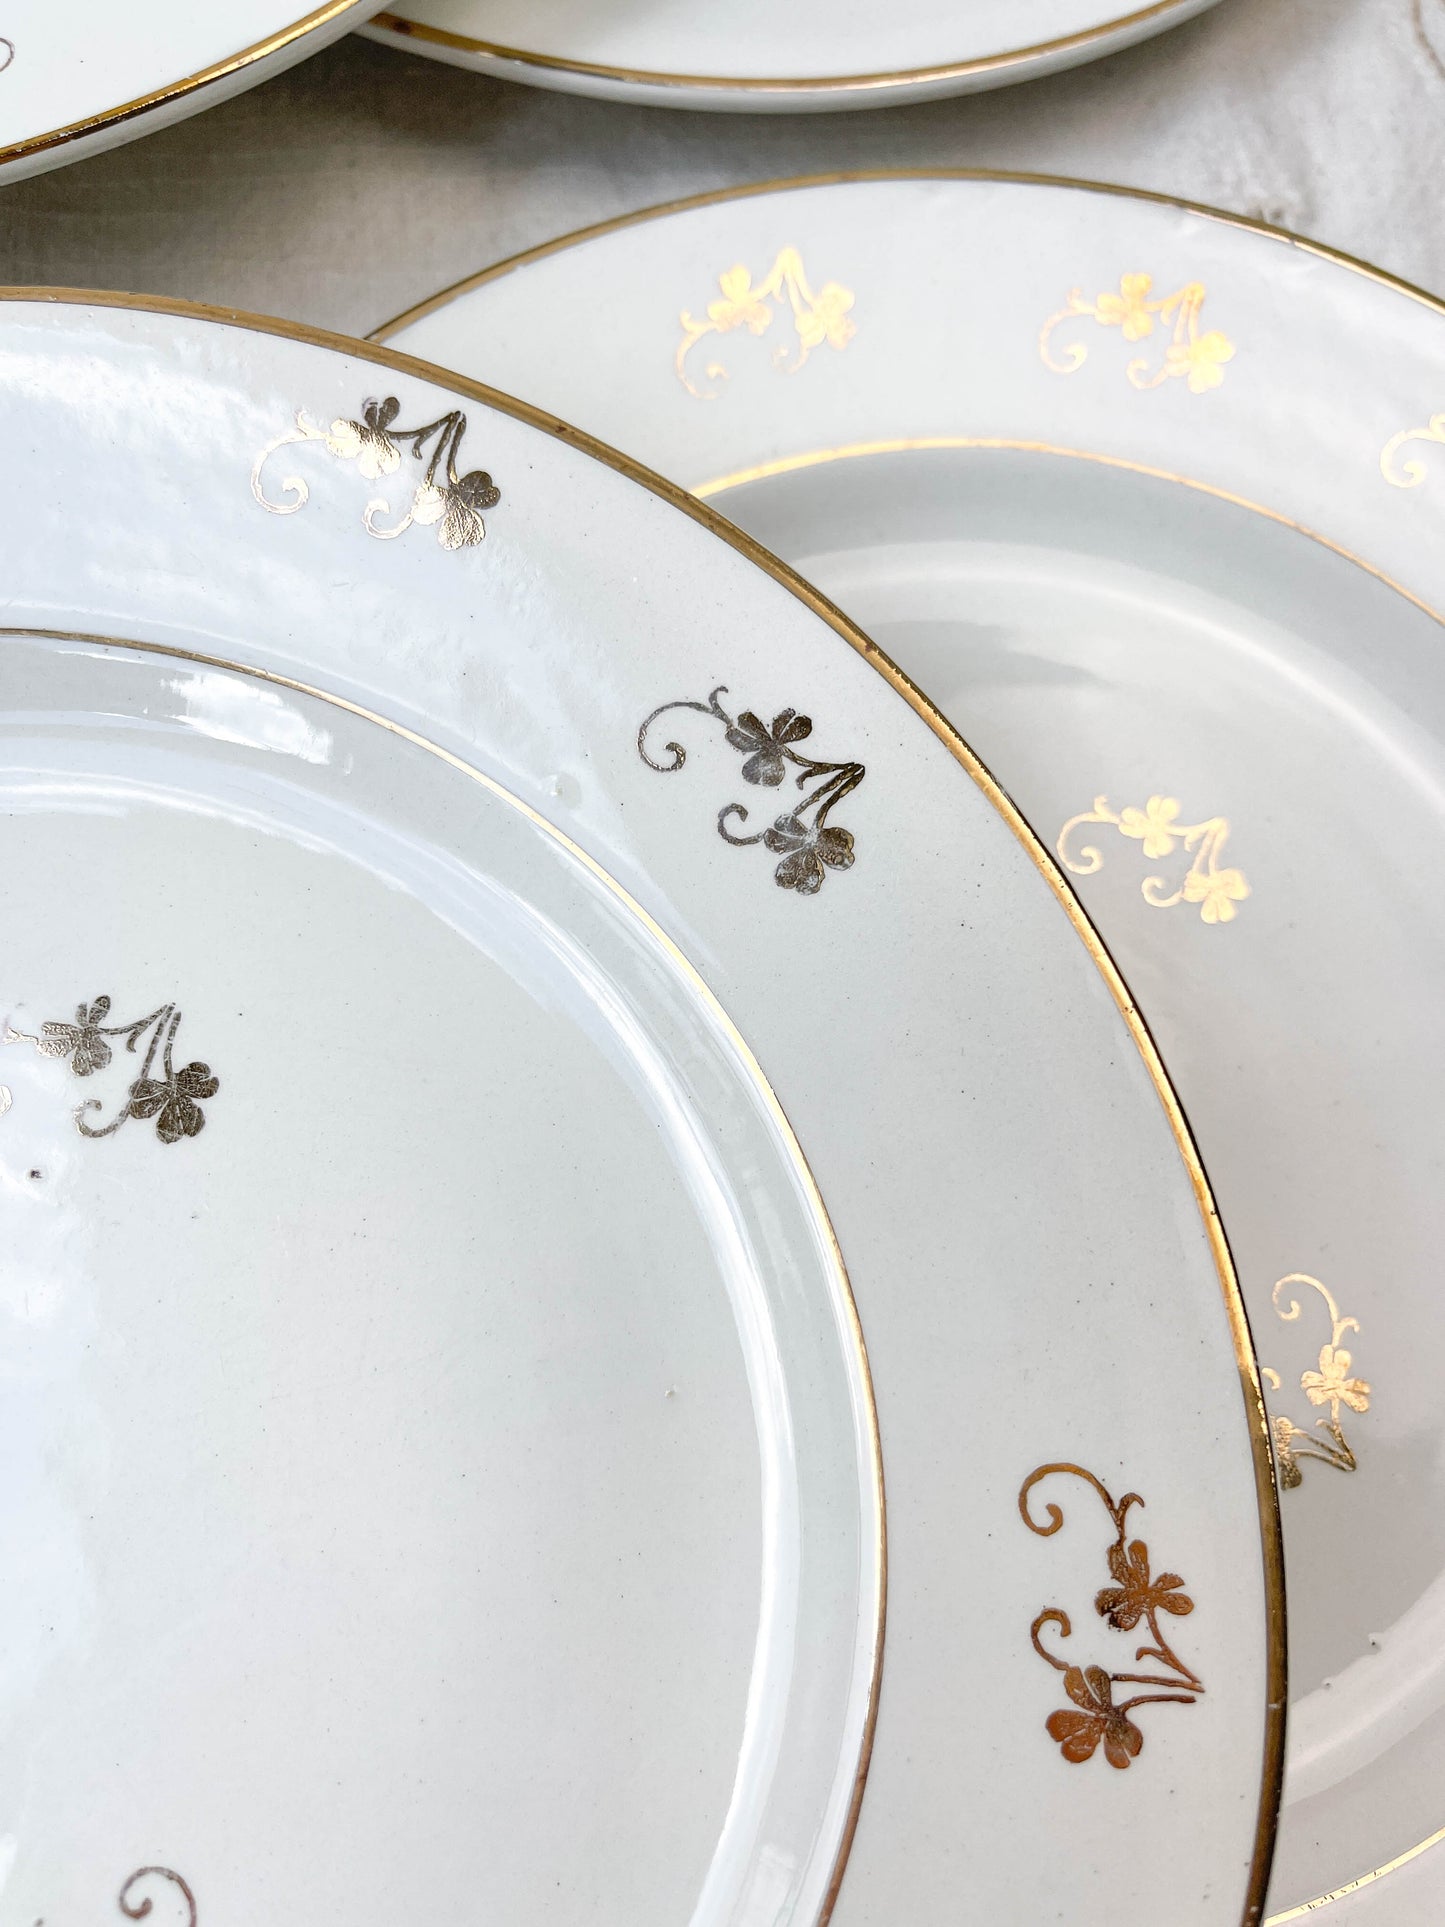 Assiettes plates L’Amandinoise en porcelaine blanche dorées motif fleuris